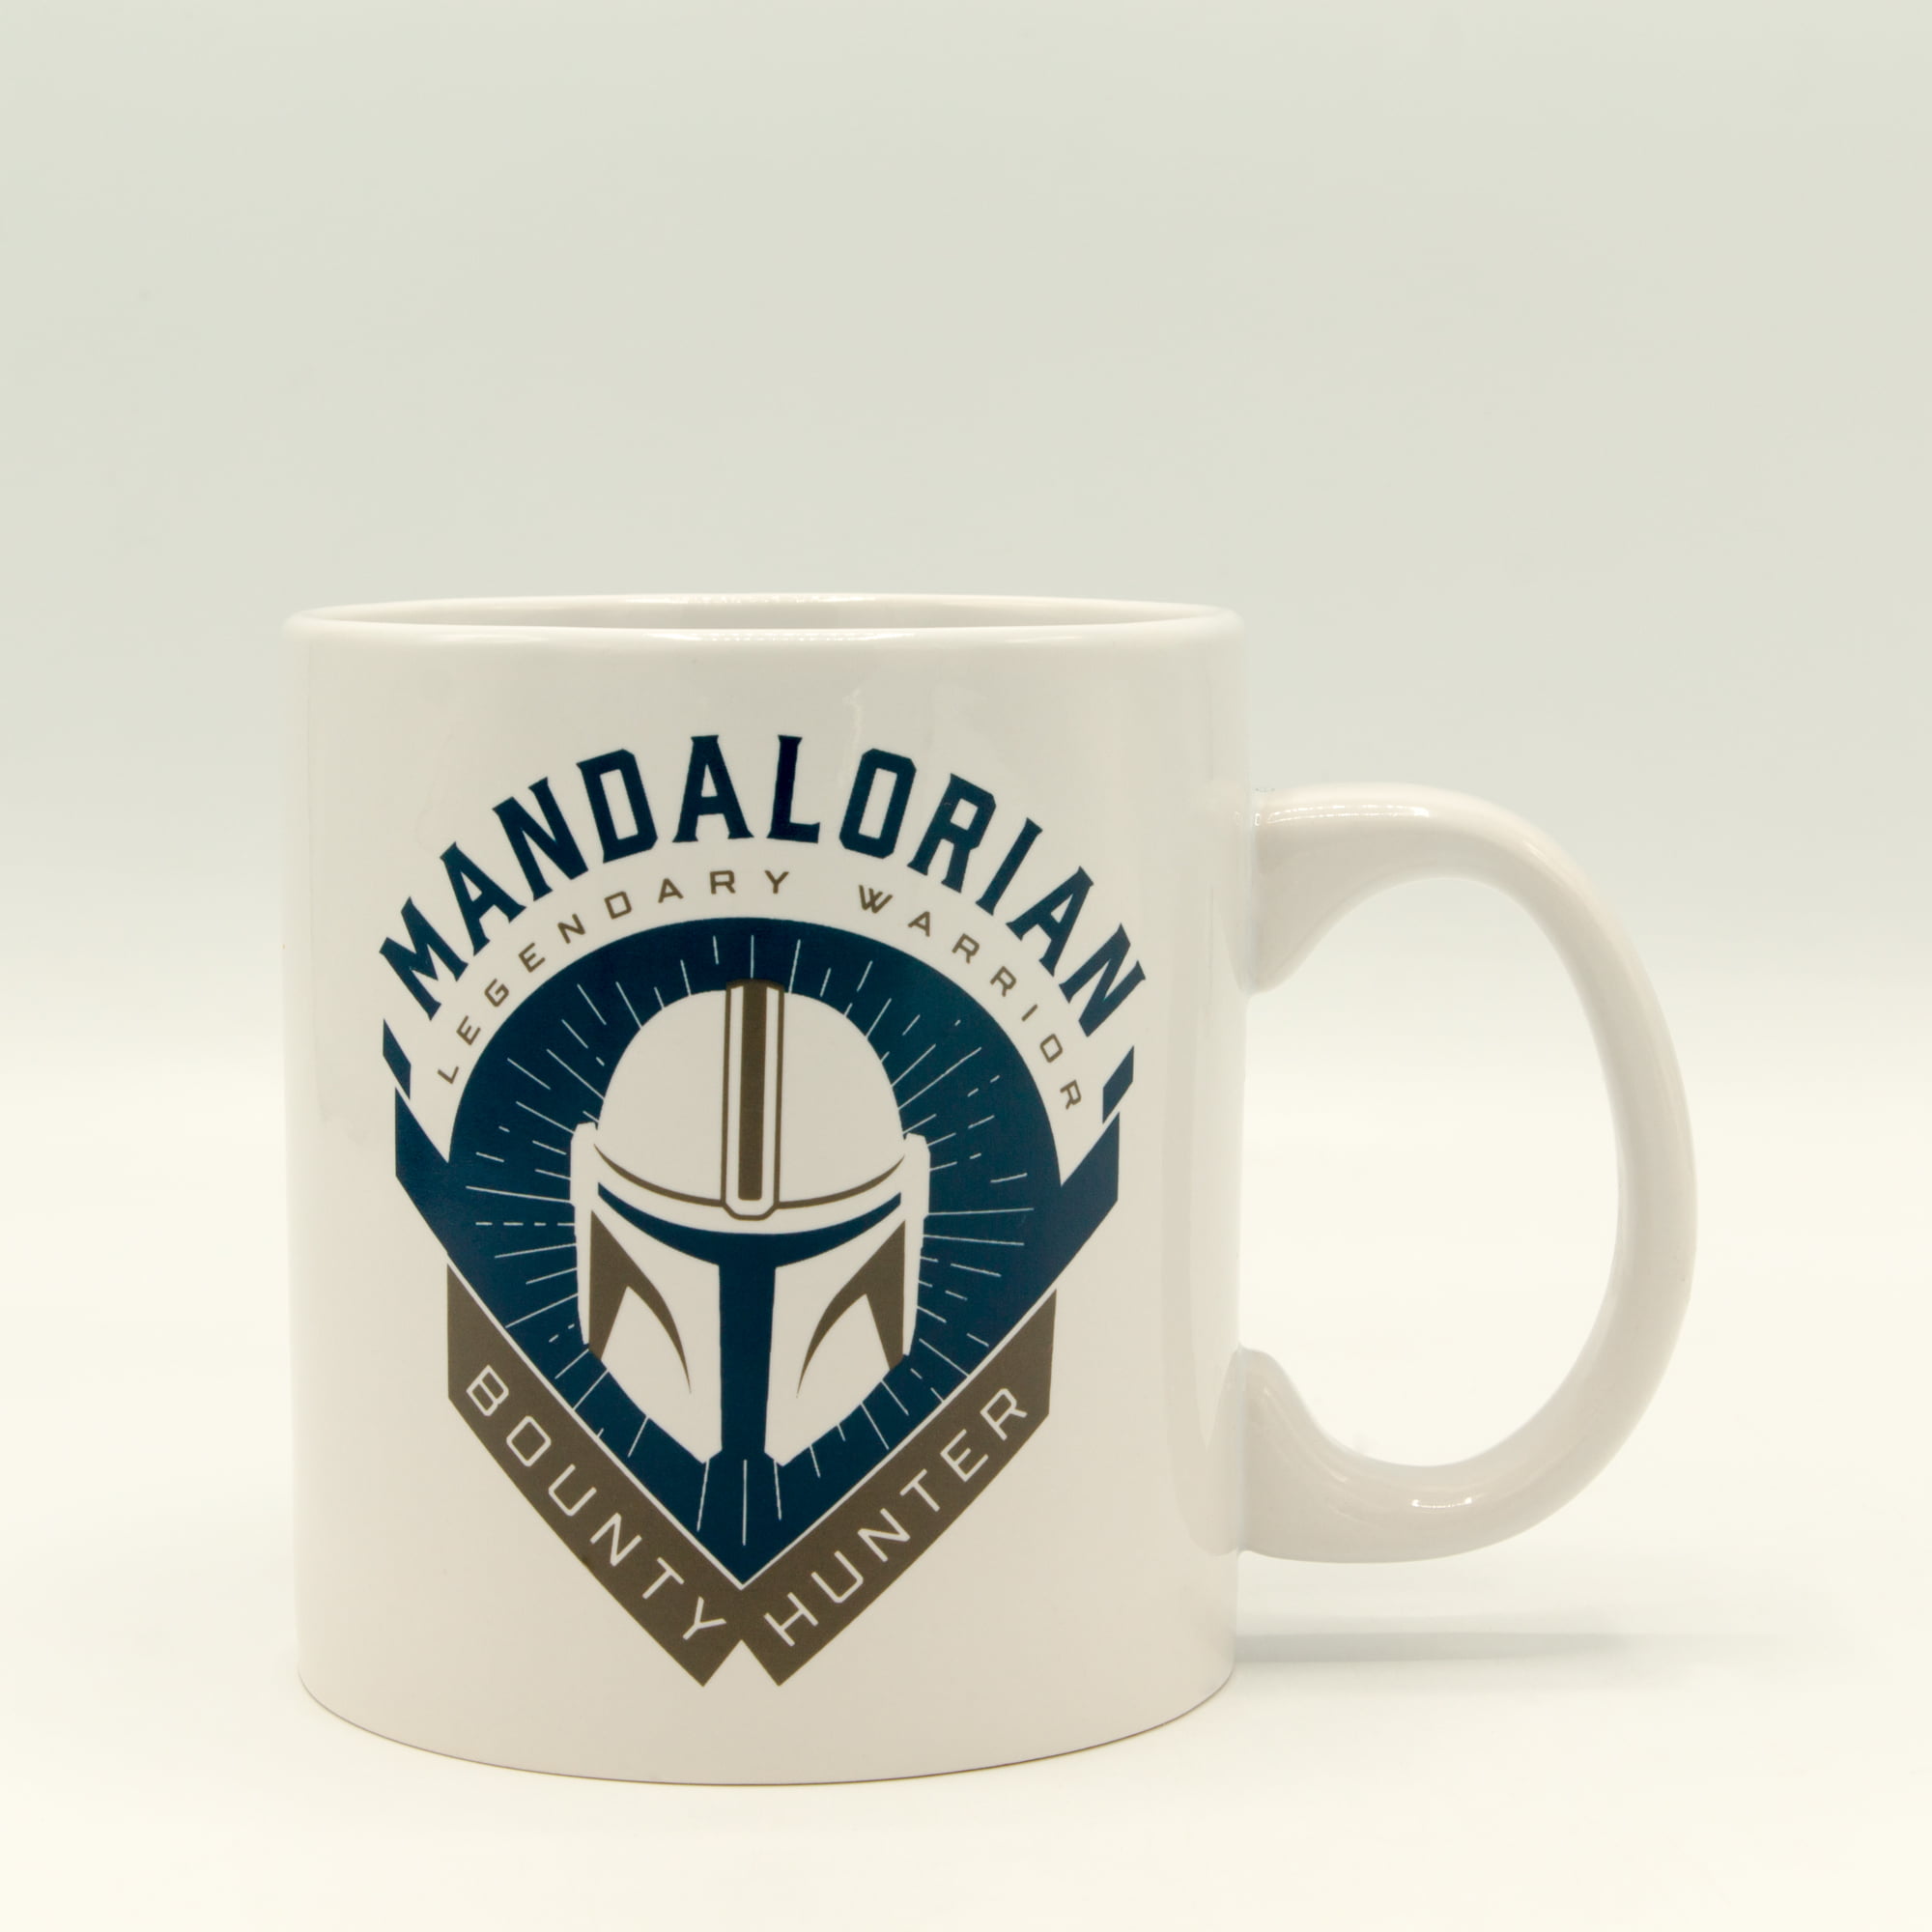 The Mandalorian Mythosaur Star Wars Coffee Mug 